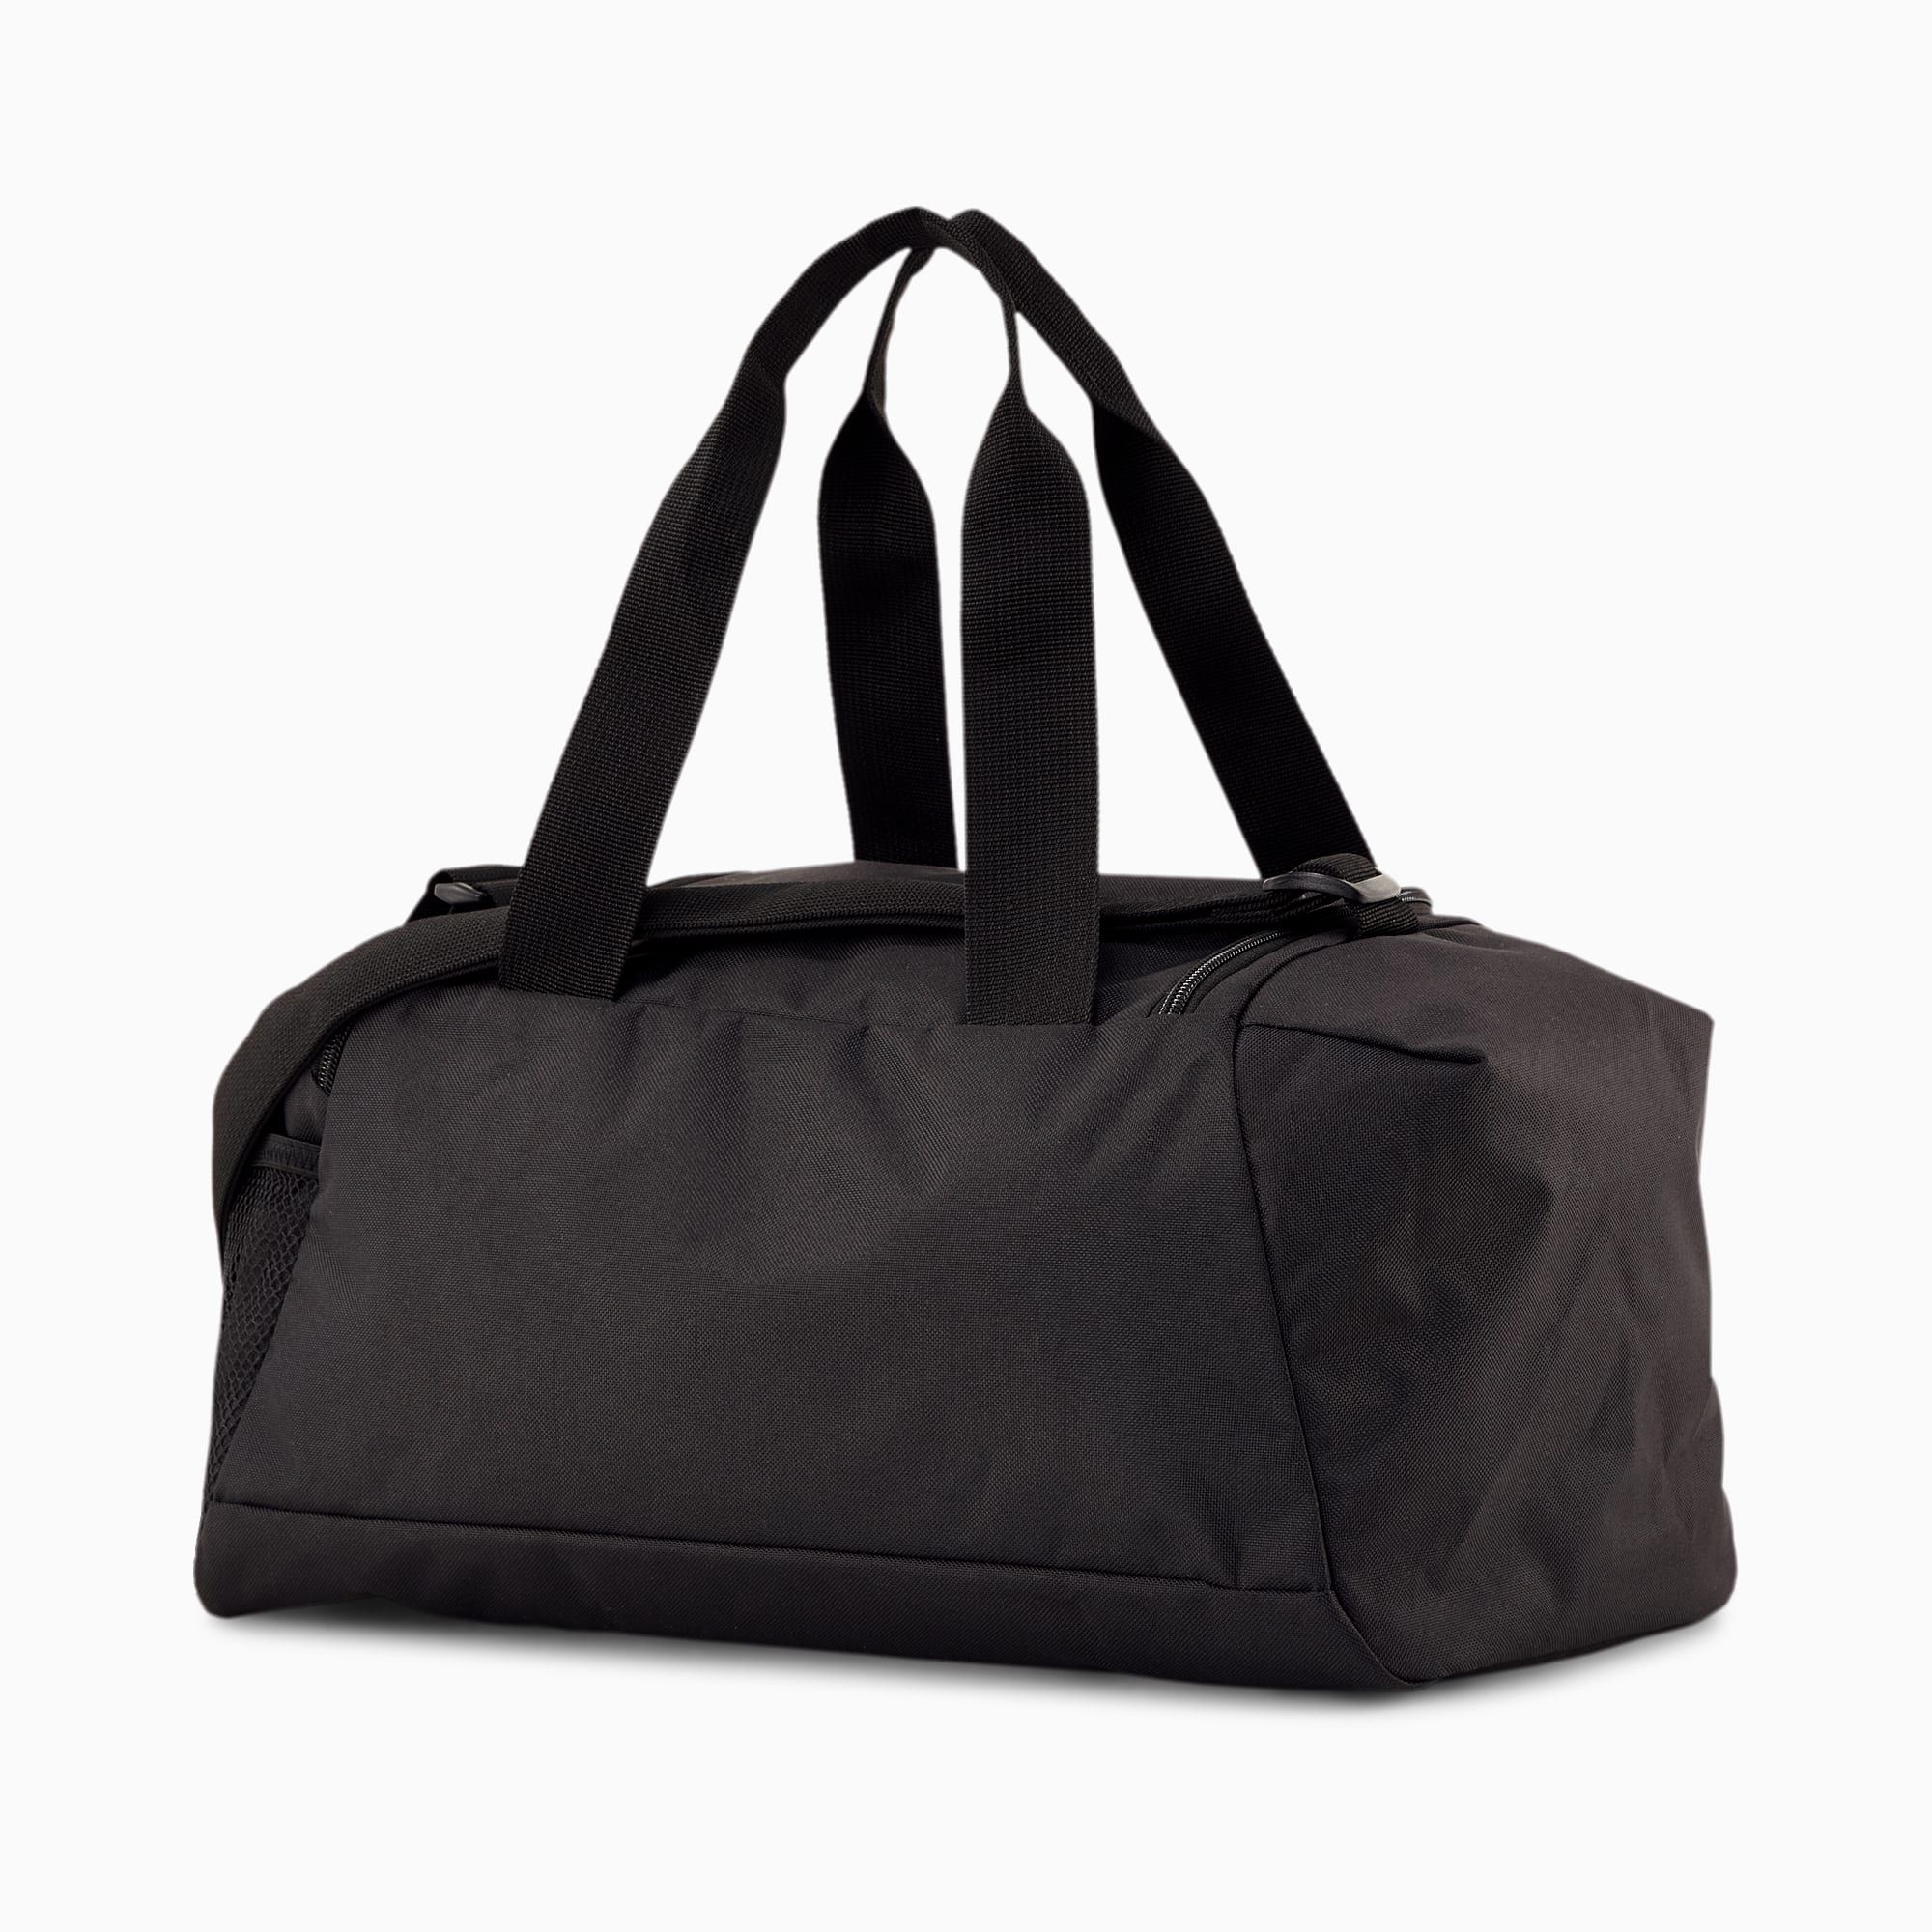  Puma Fundamentals Sports Bag XS - Black 